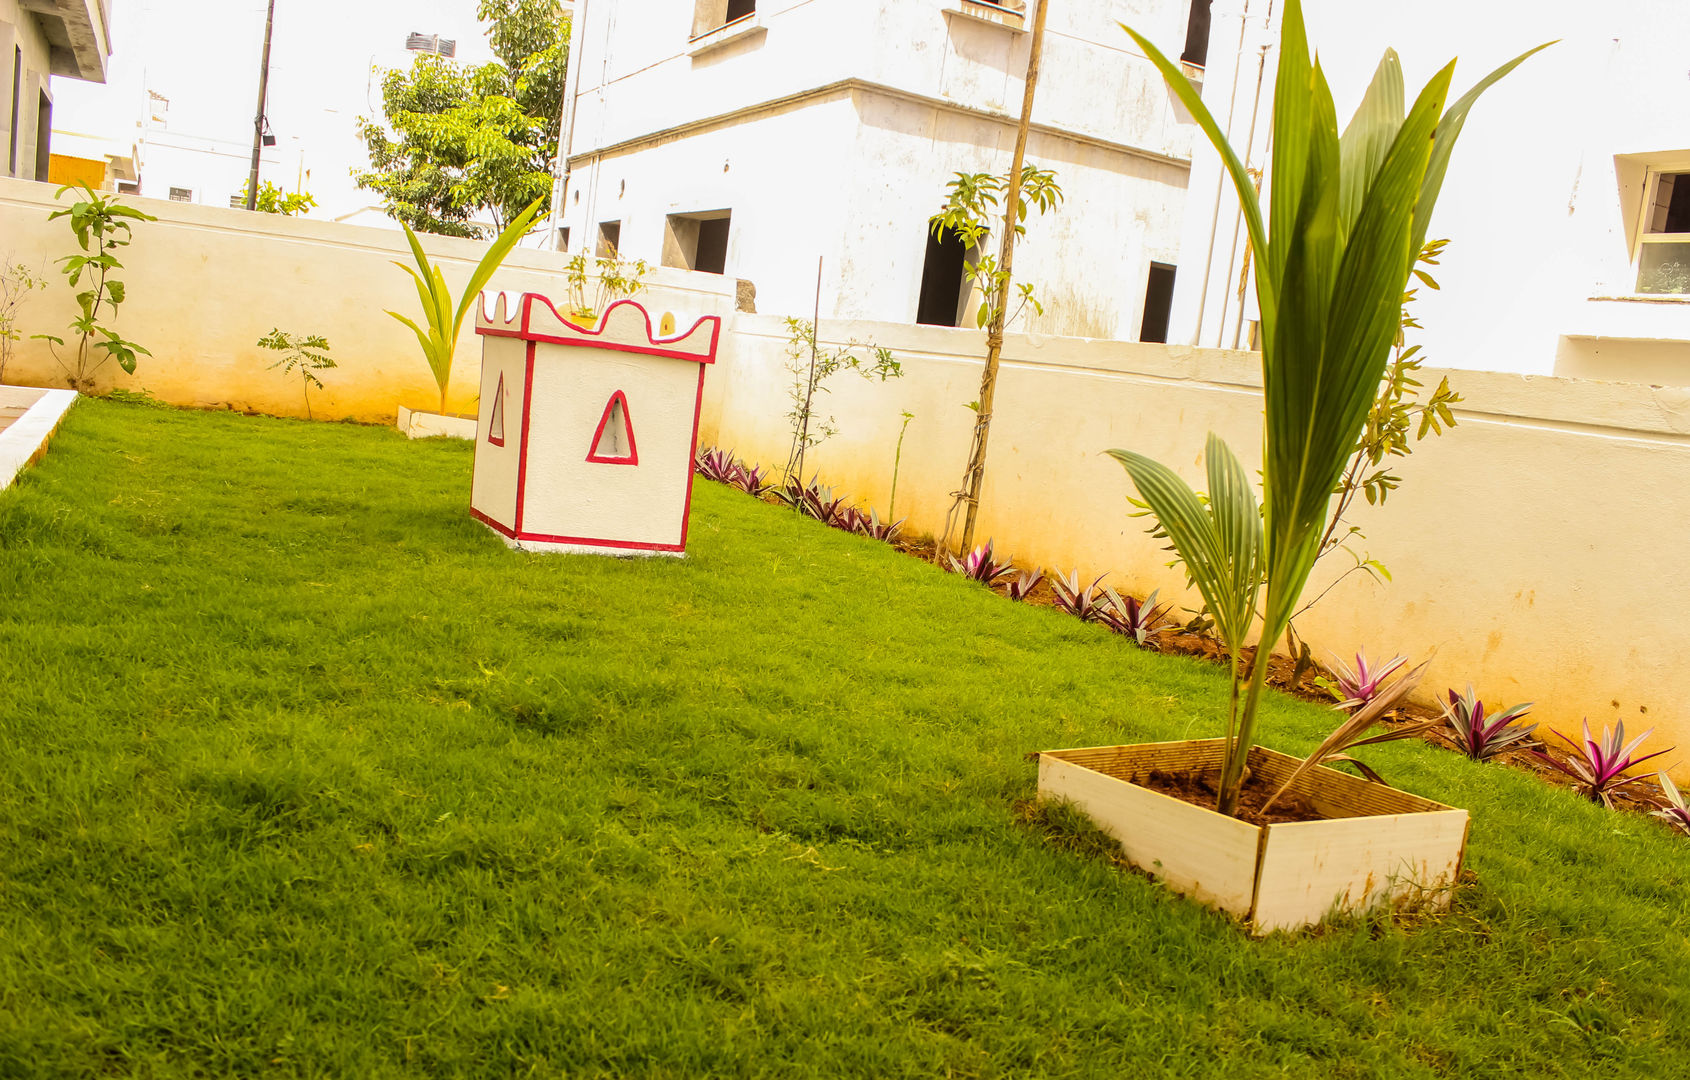 Villa at Appa Junction, Hyderabad., Happy Homes Designers Happy Homes Designers 室内花园 室內景觀